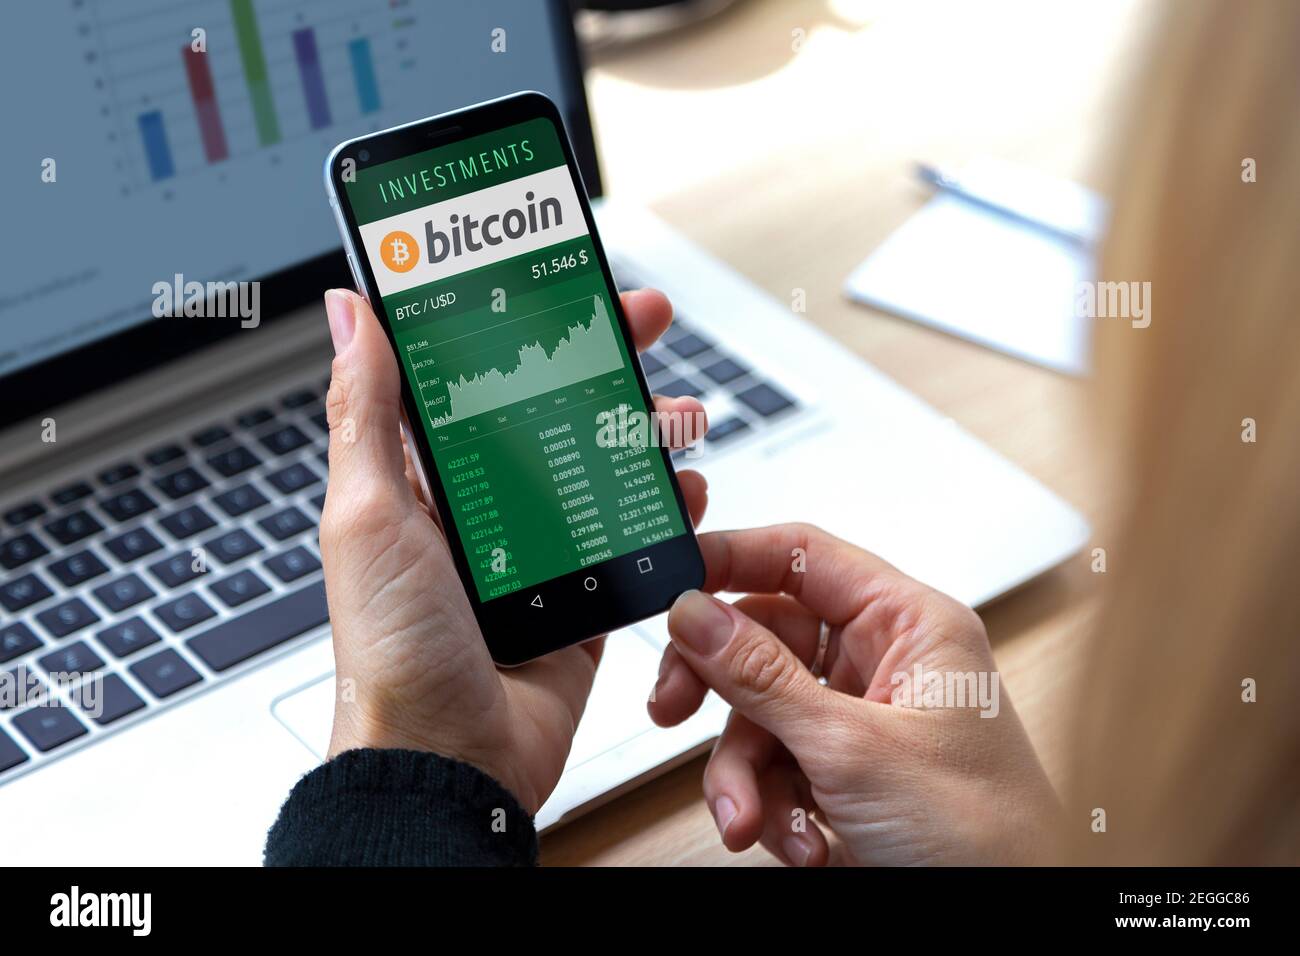 ROSARIO, ARGENTINIEN - 17. FEBRUAR 2021: Bitcoin-Diagramm in einem Bildschirm des Mobiltelefons. Geschäftsfrau mit Smartphone in den Händen. Investition in virtuelles Geld Stockfoto